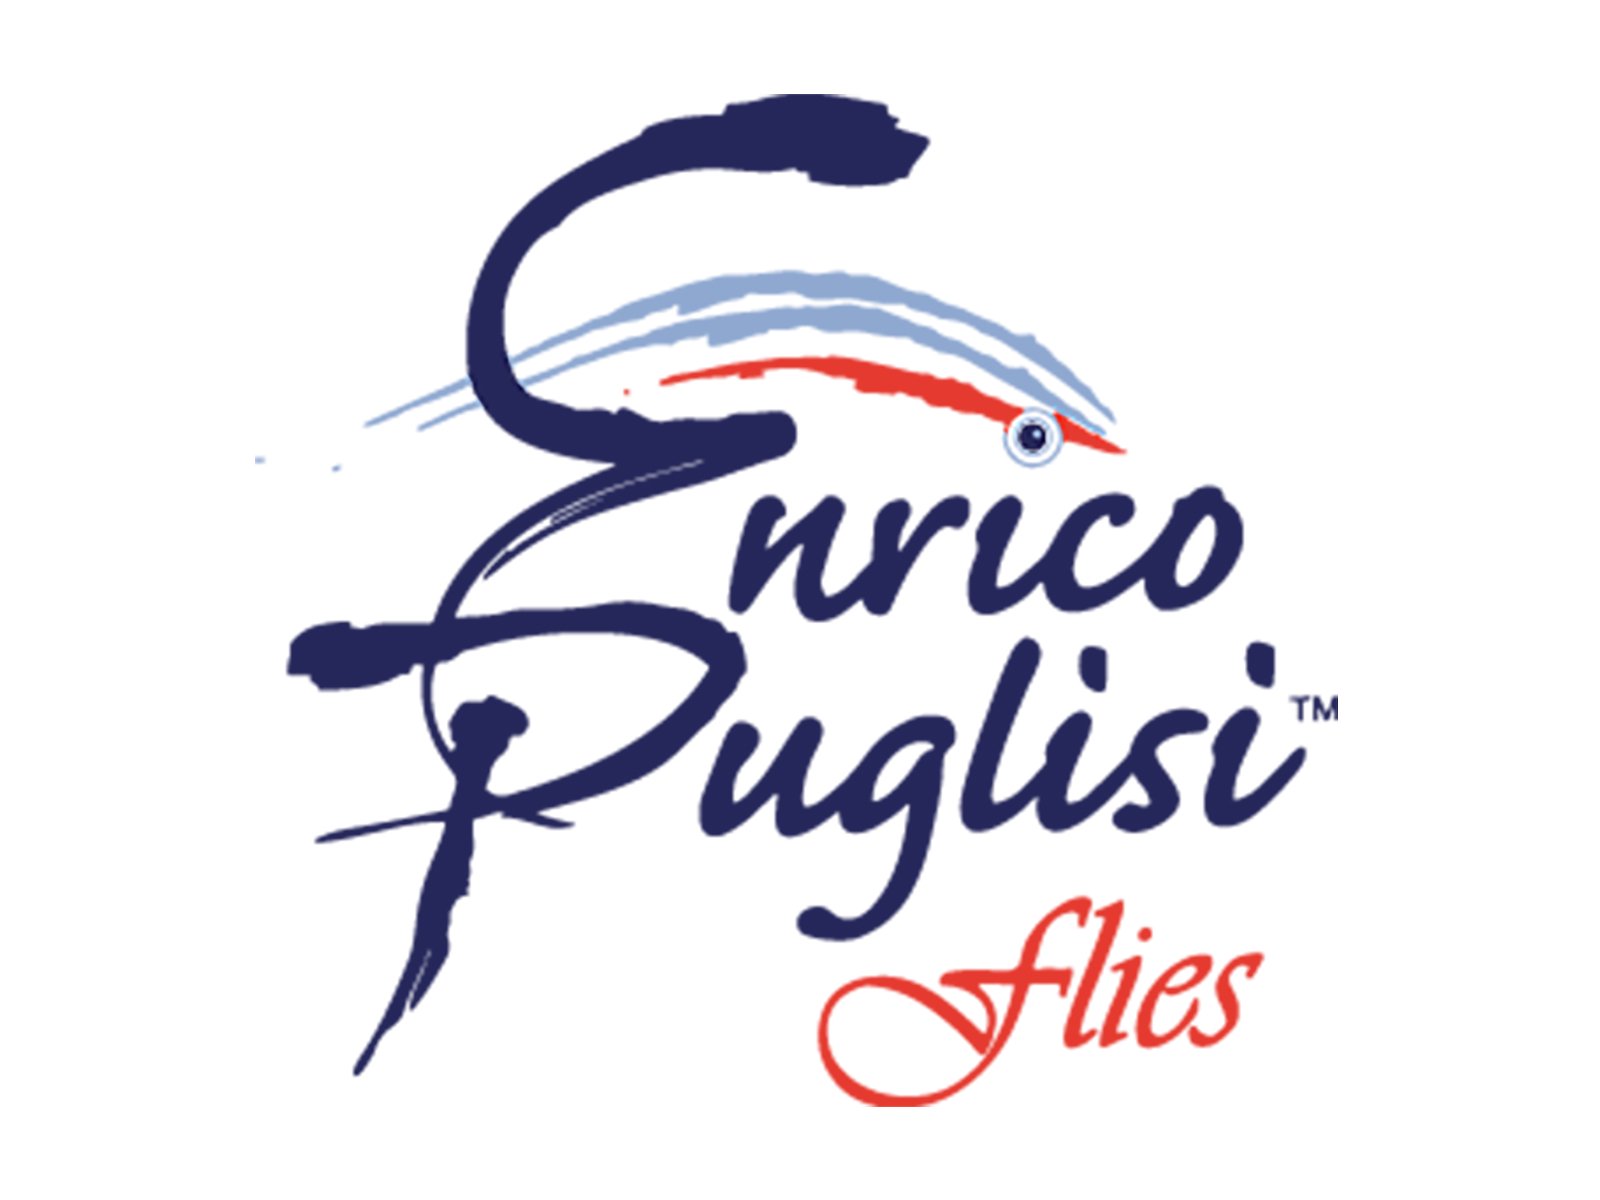 ENRICO PUGLISH FLIES